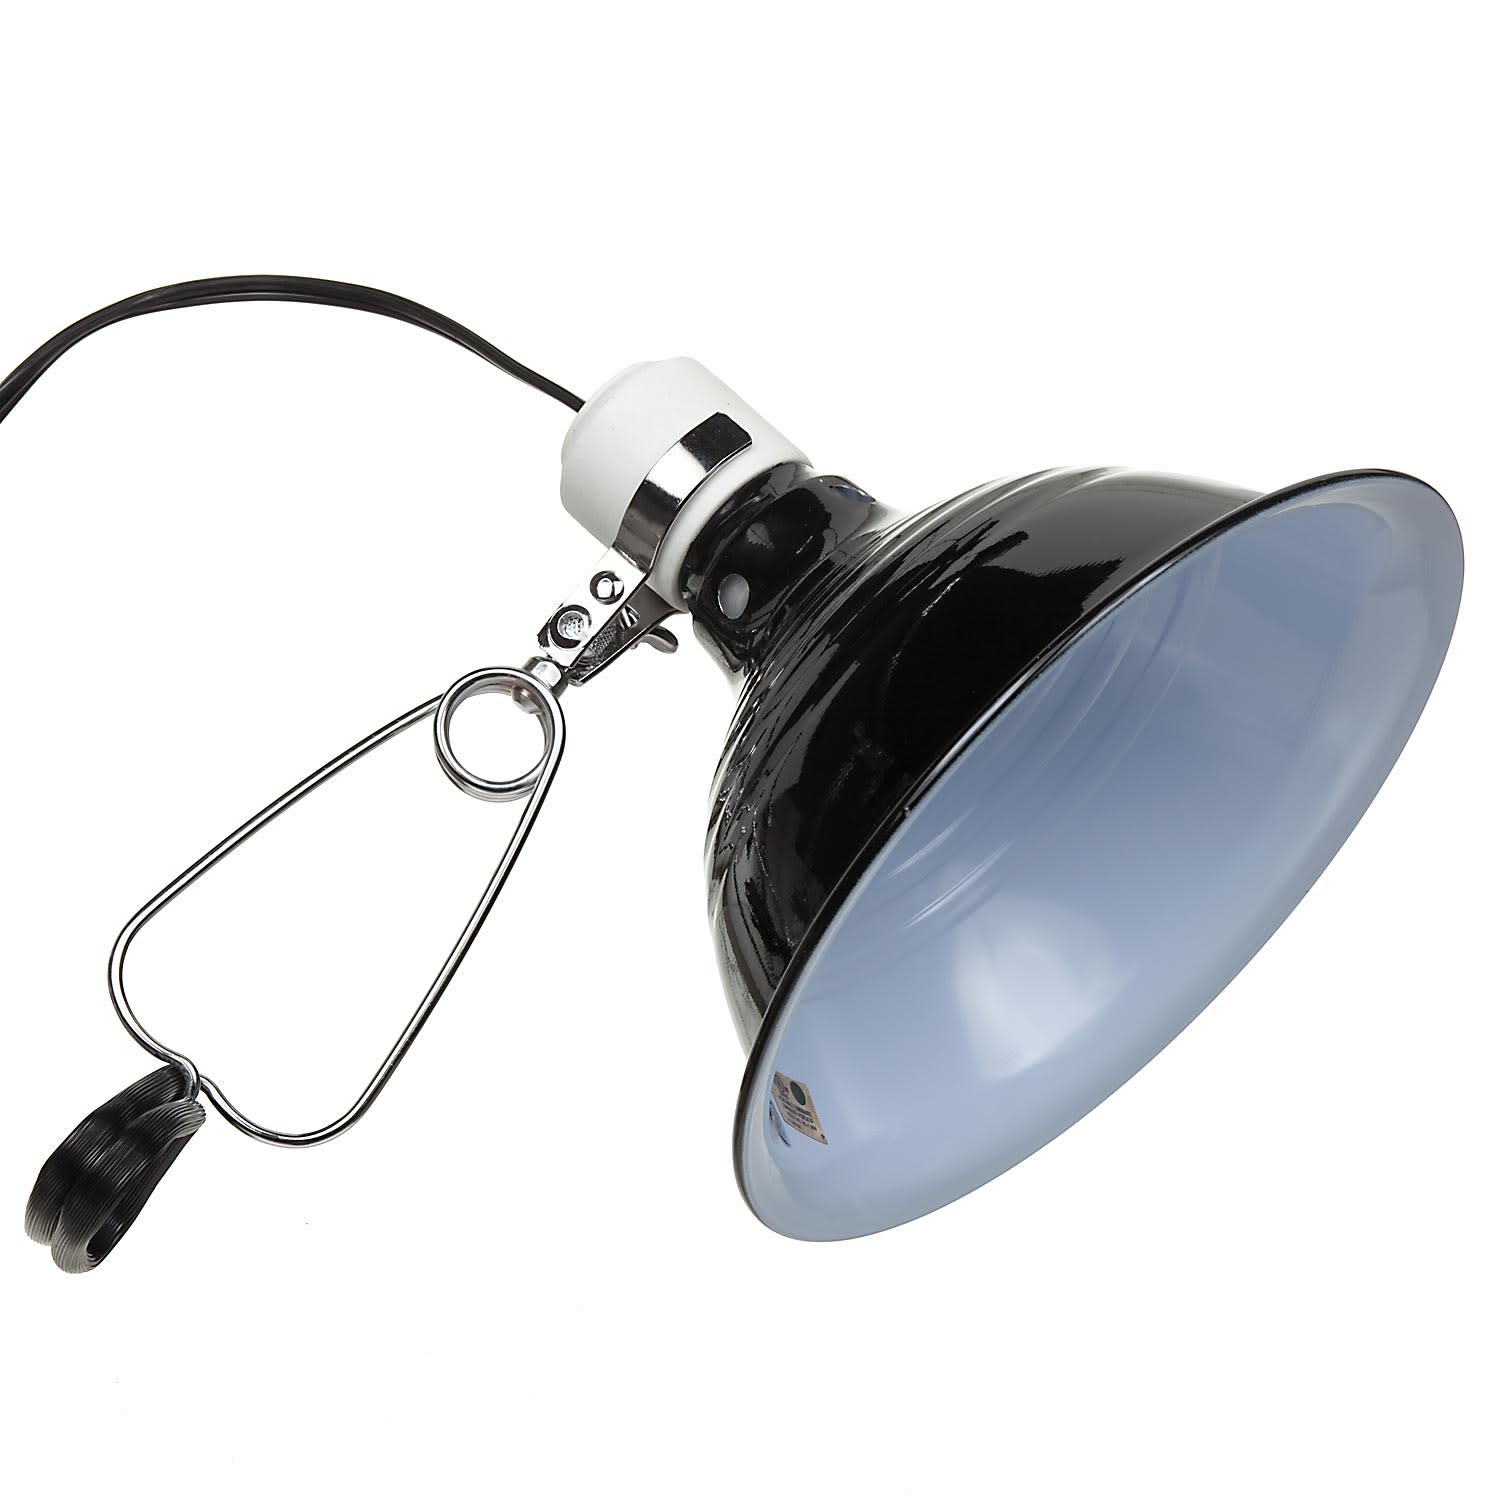 Fluker S Clamp Lamp 150w 8 5 Petco